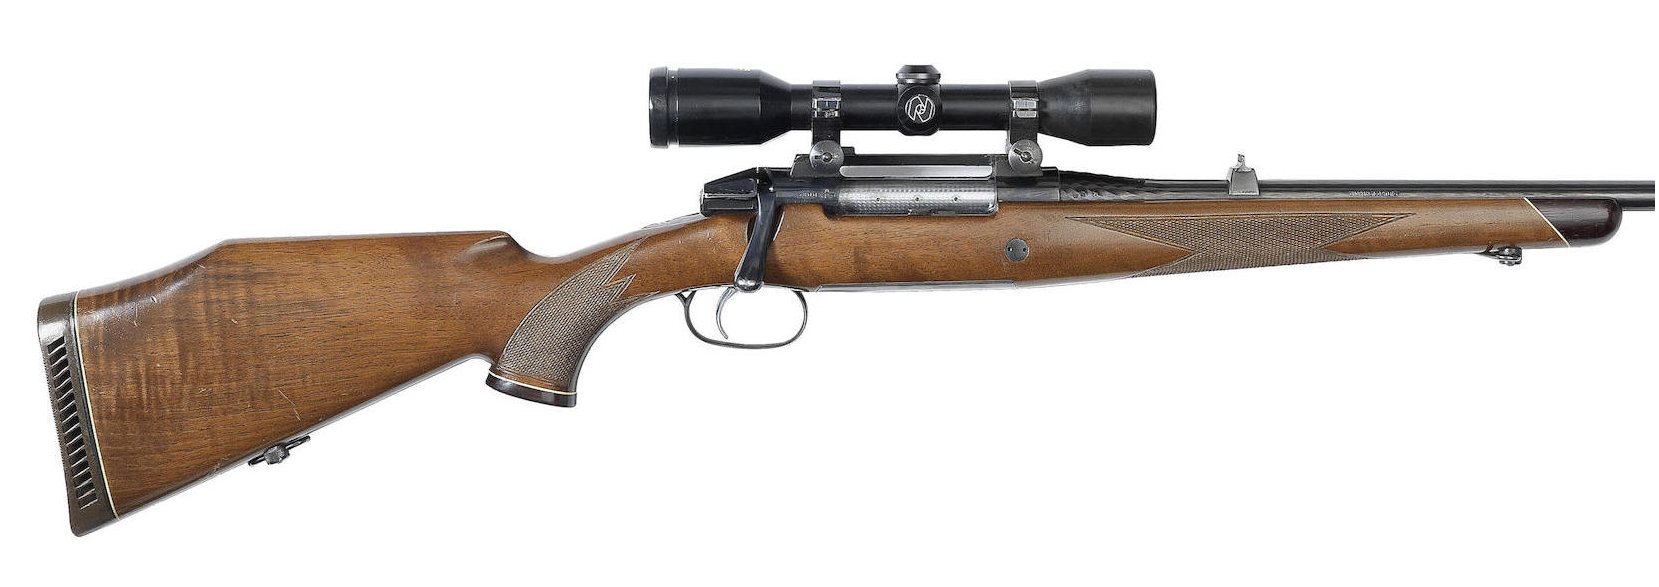 Mannlicher-Schönauer Rifles for Sale-4-M72